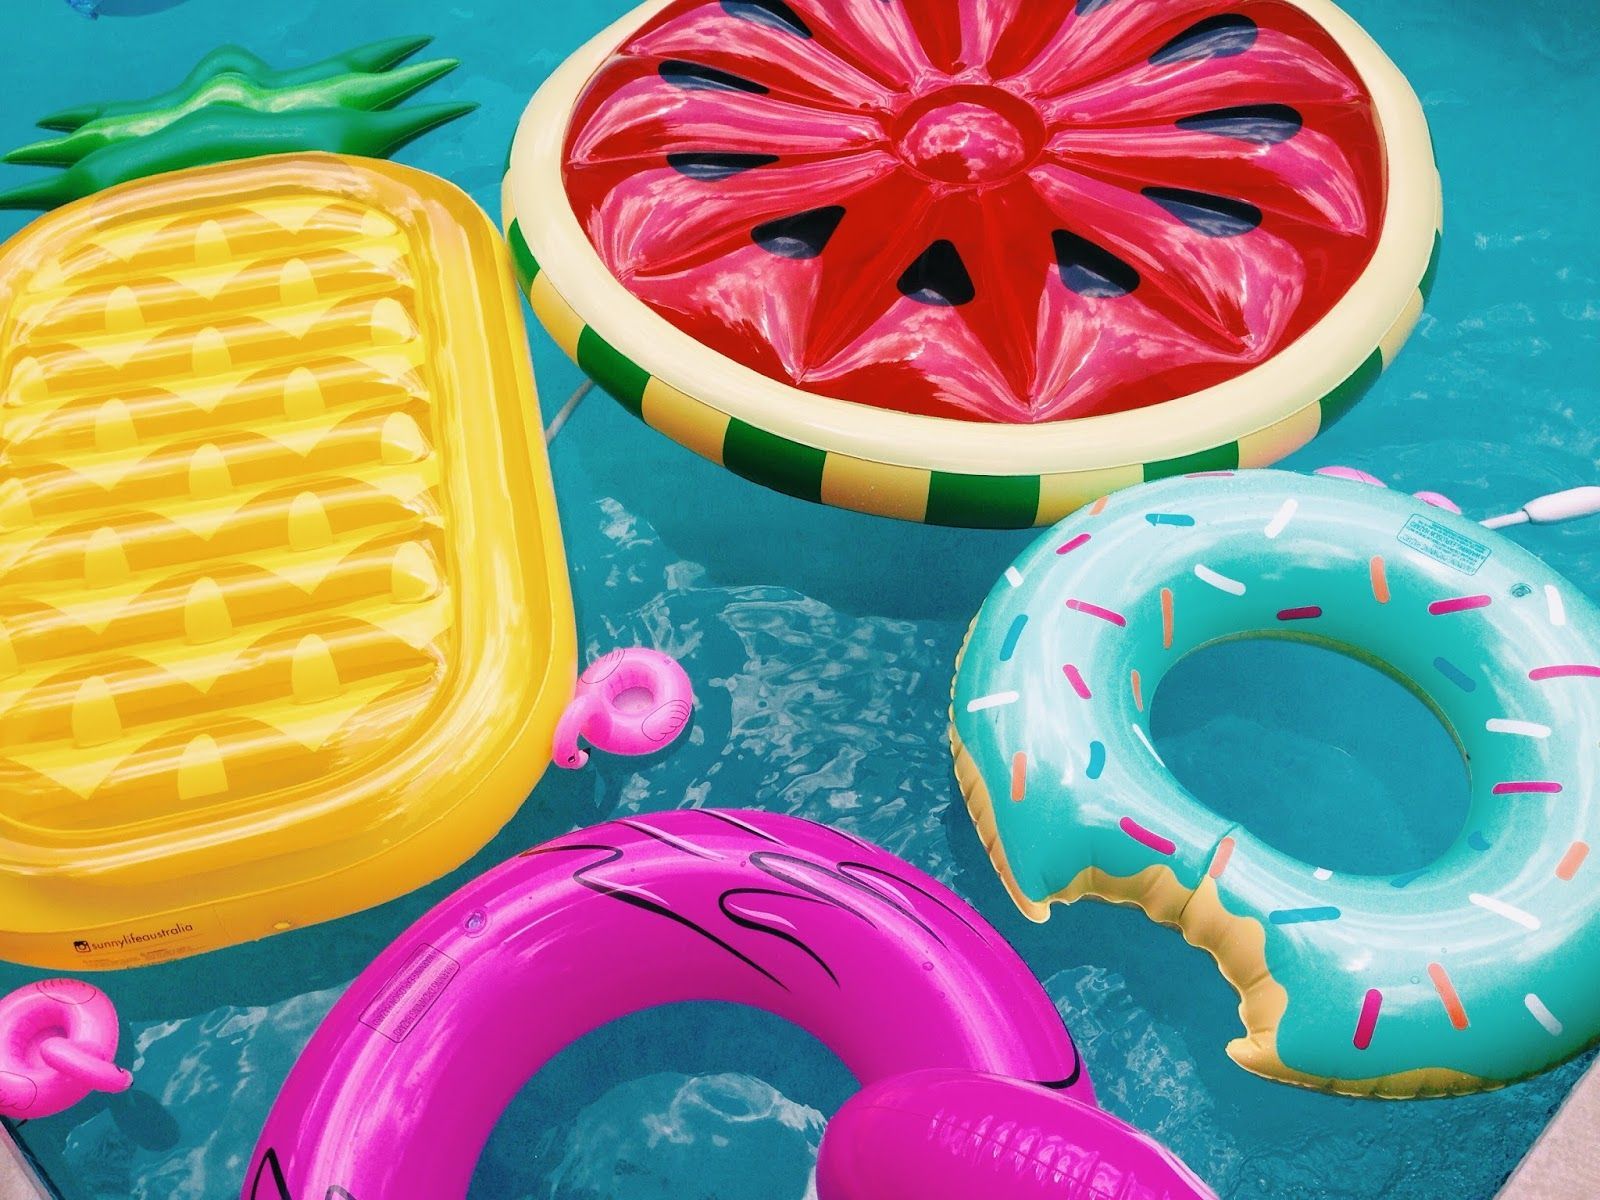 Afbeeldingsresultaat voor pool floats. Wallpaper iphone summer